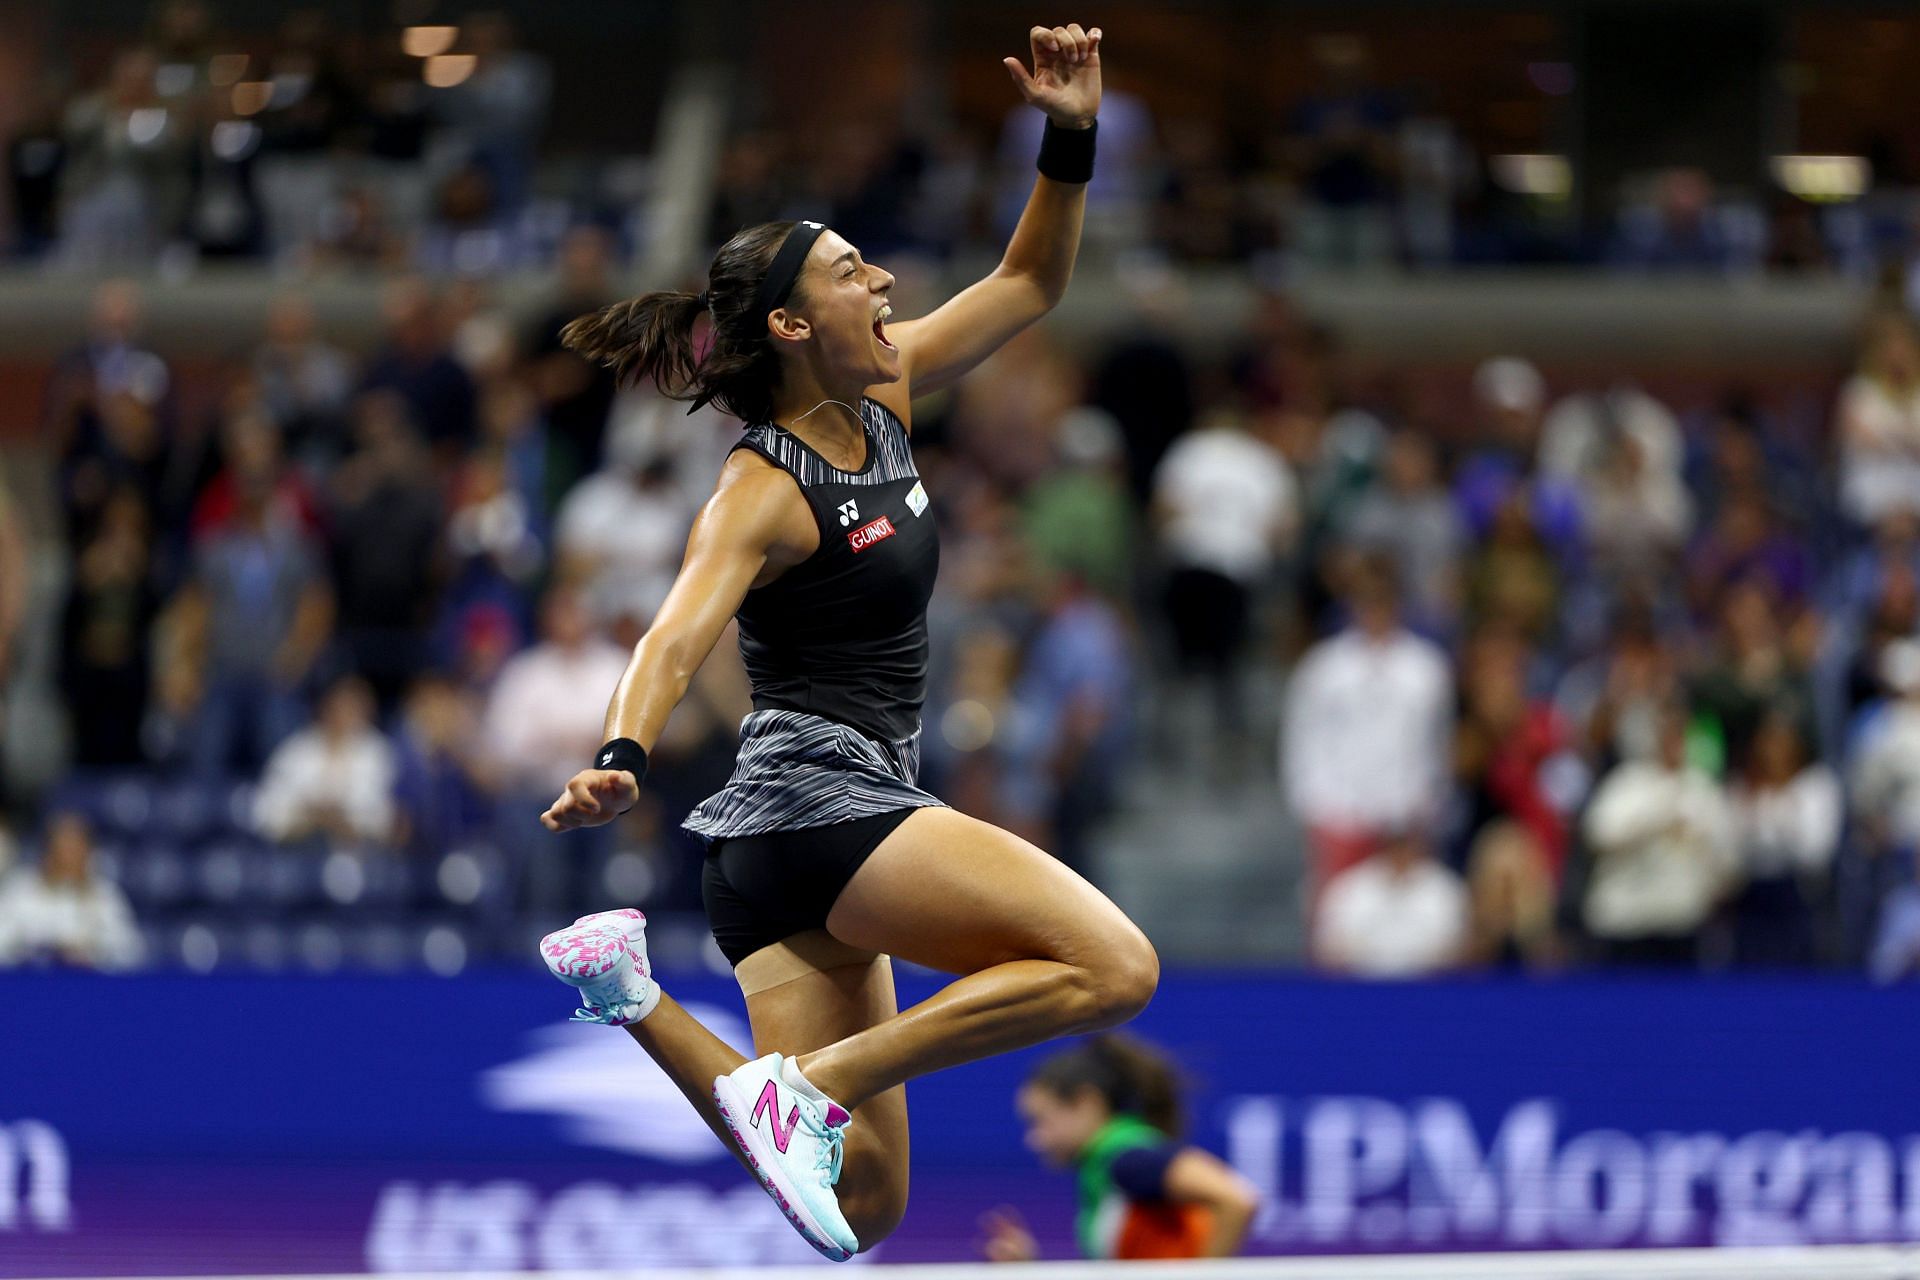 क्वार्टरफाइनल में जीत के बाद हवा में खुशी से उछलते हुए कैरोलीन गार्सिया।